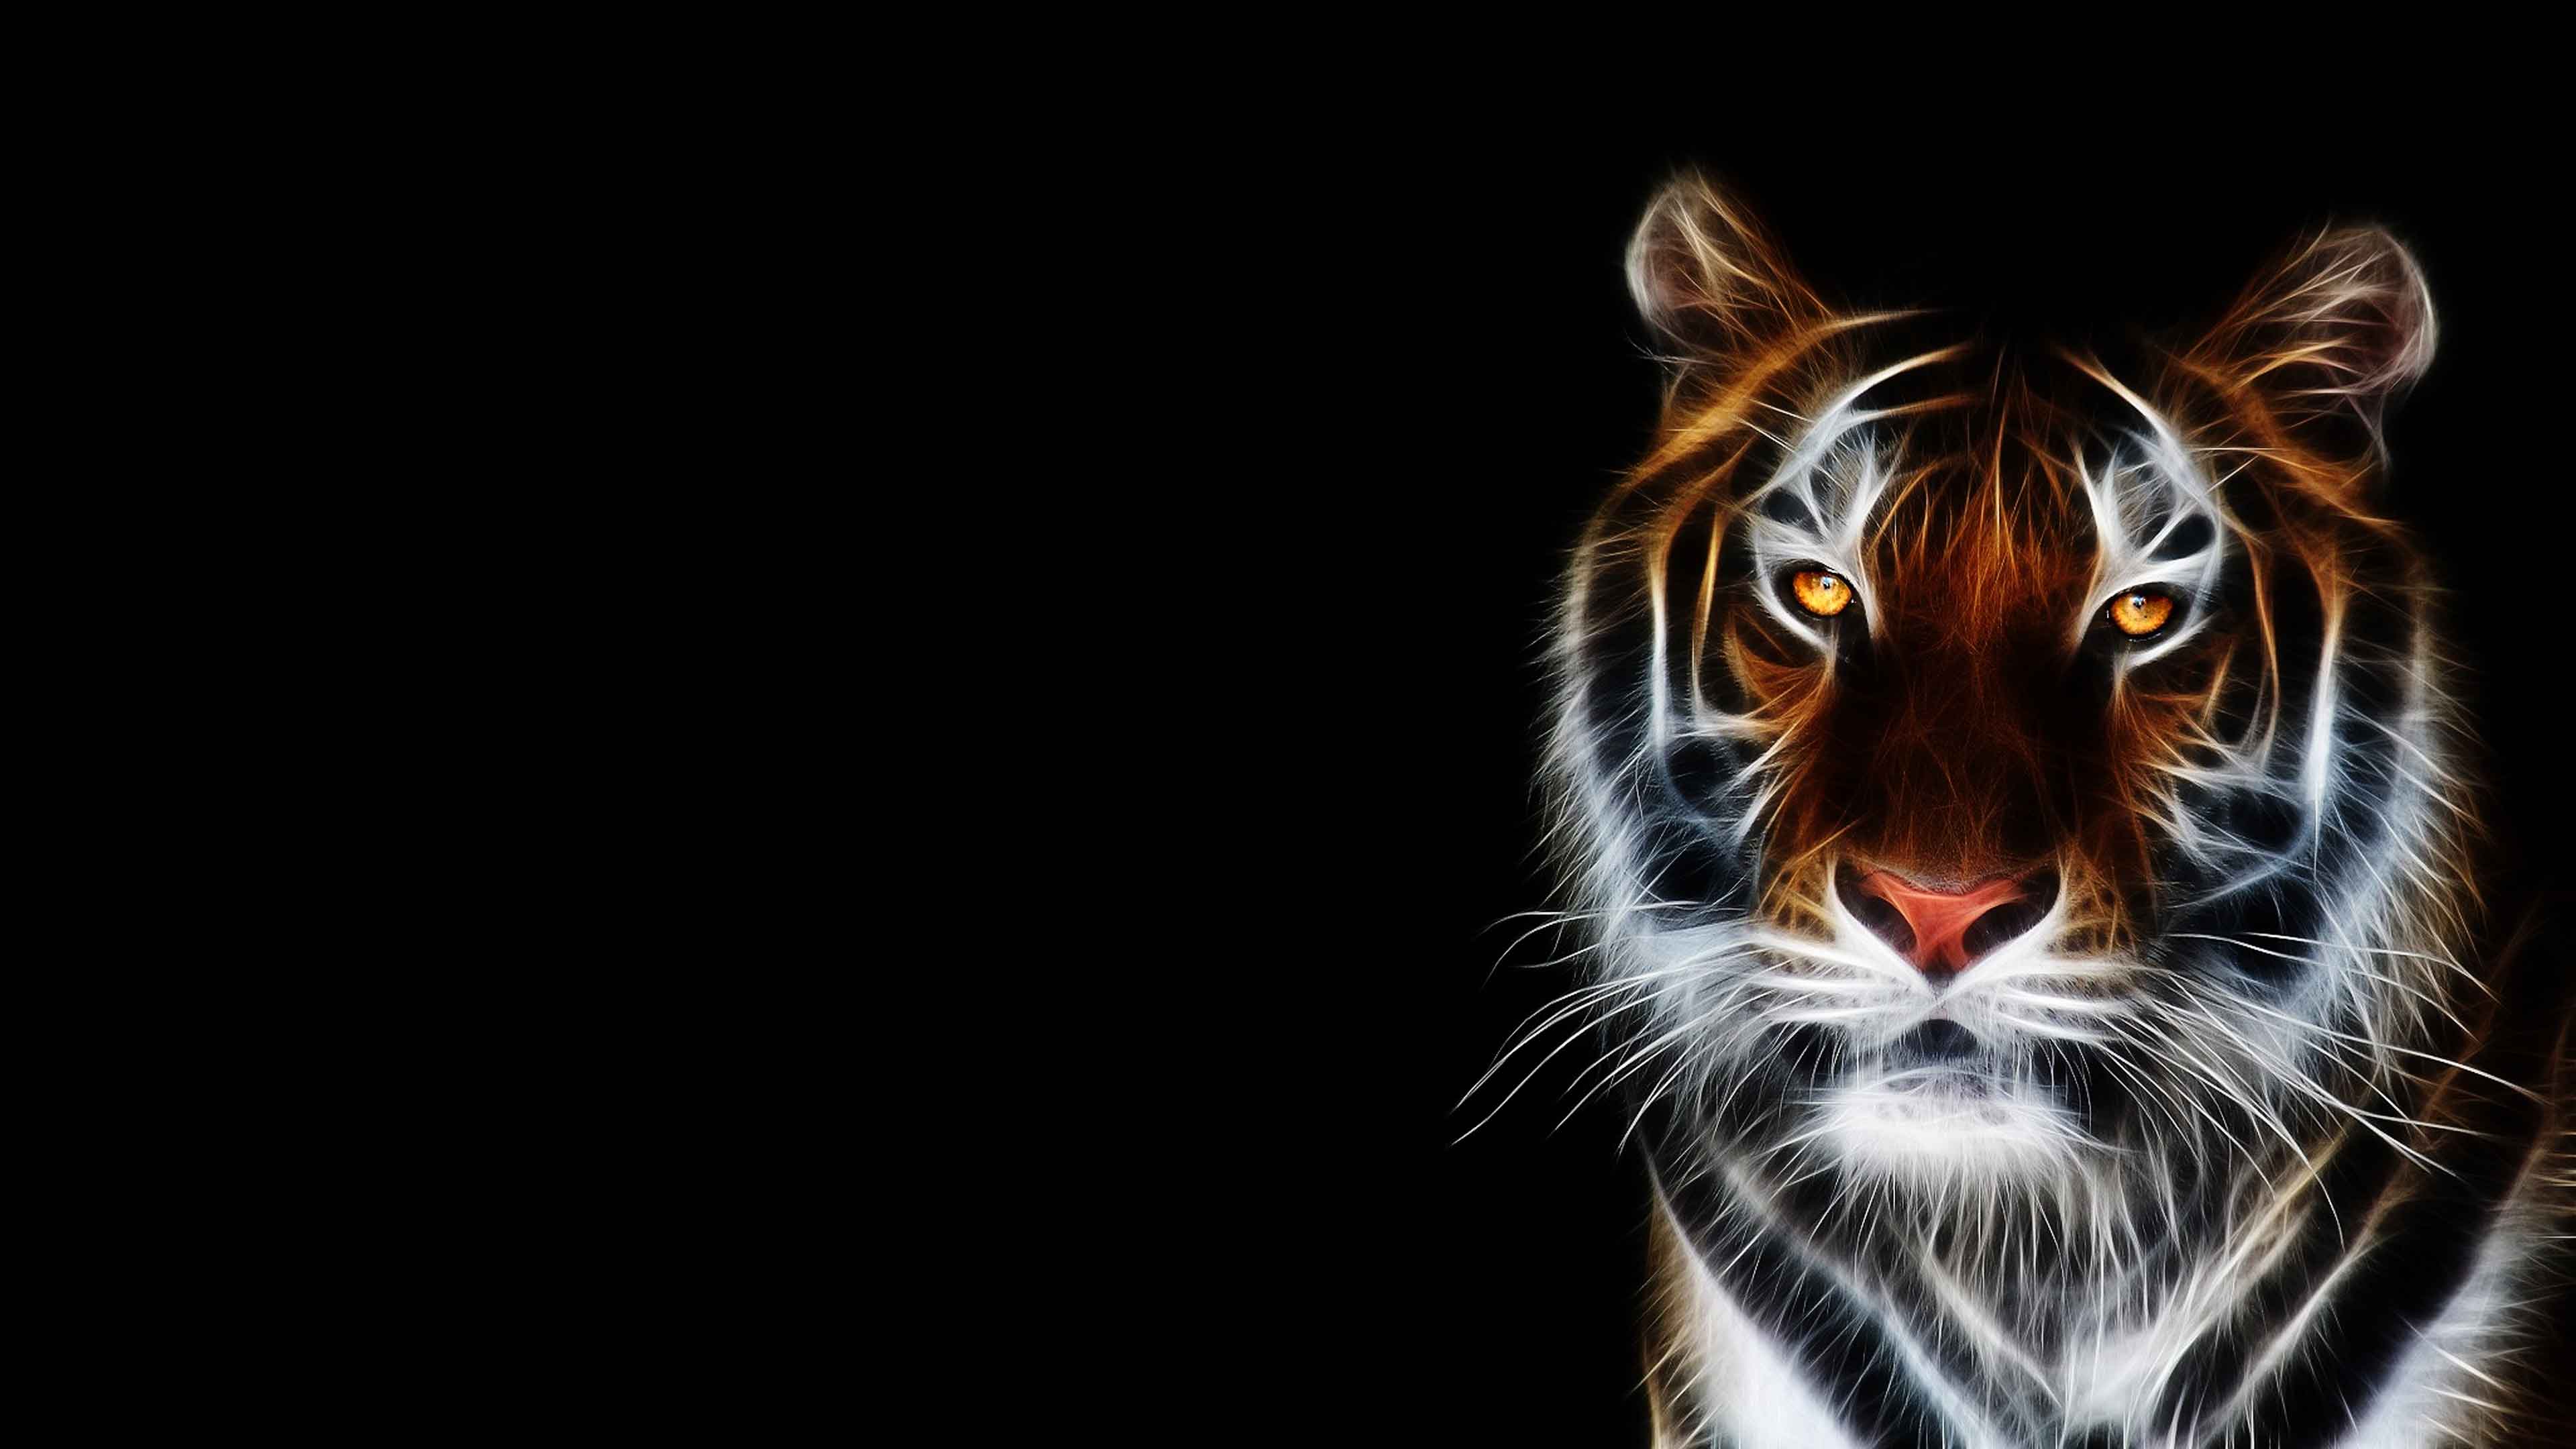 3D Tiger Wallpaper Desktop | 2020 Live Wallpaper HD